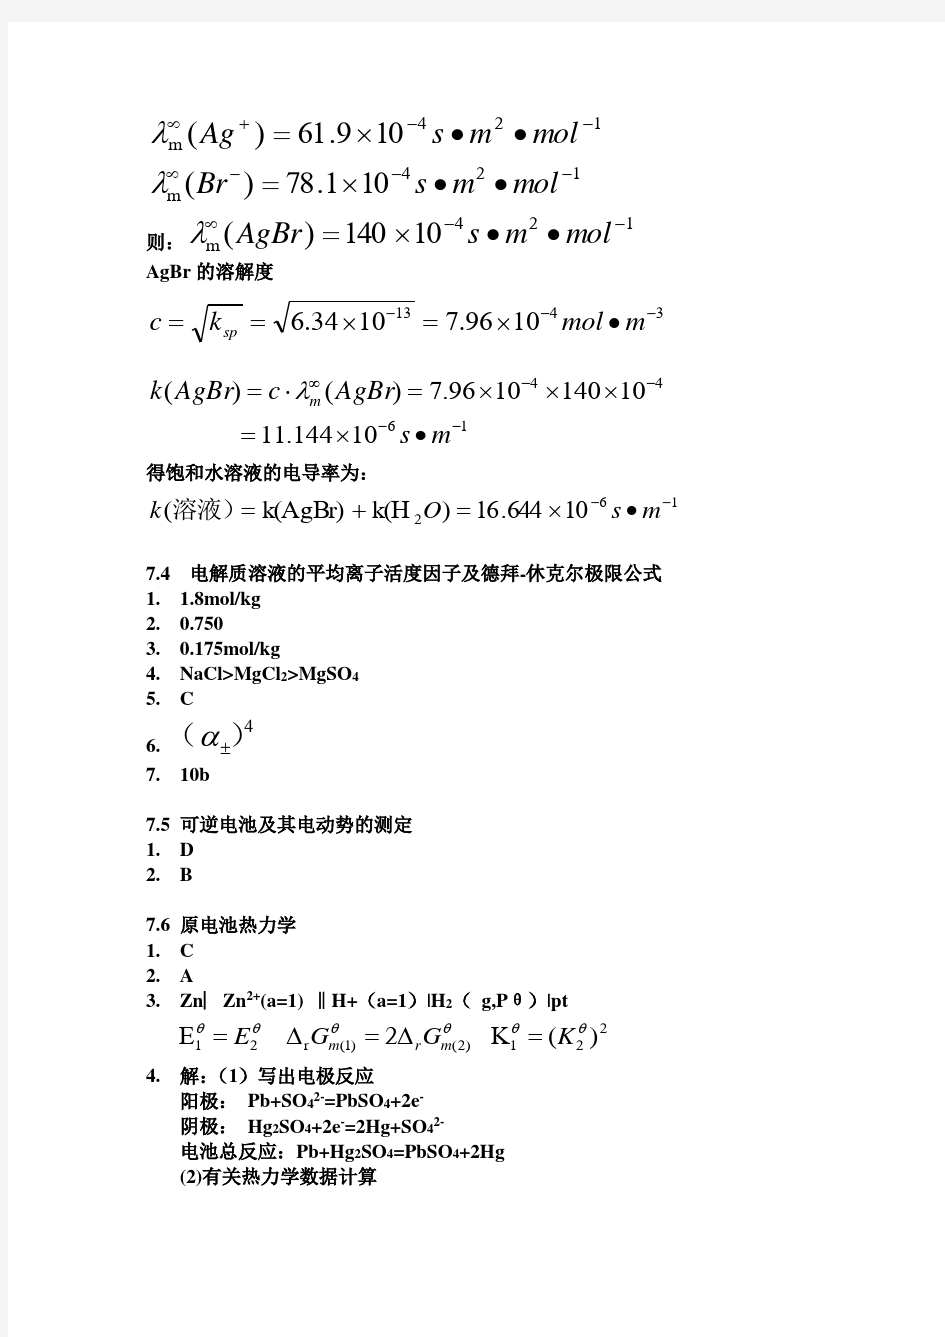 (完整版)武汉科技大学物理化学下册练习册答案